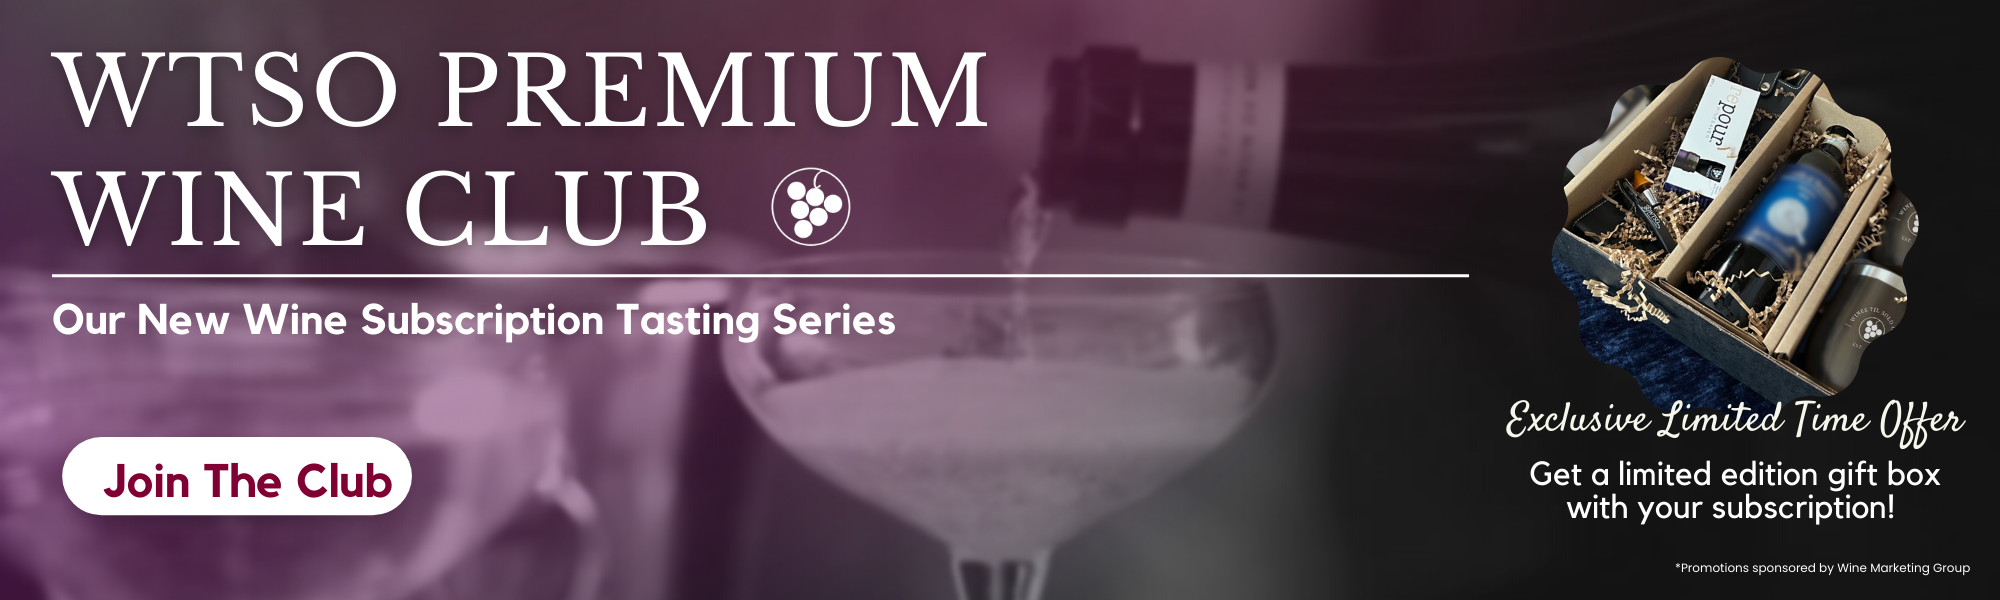 WTSO Premium Wine Club New Subscription